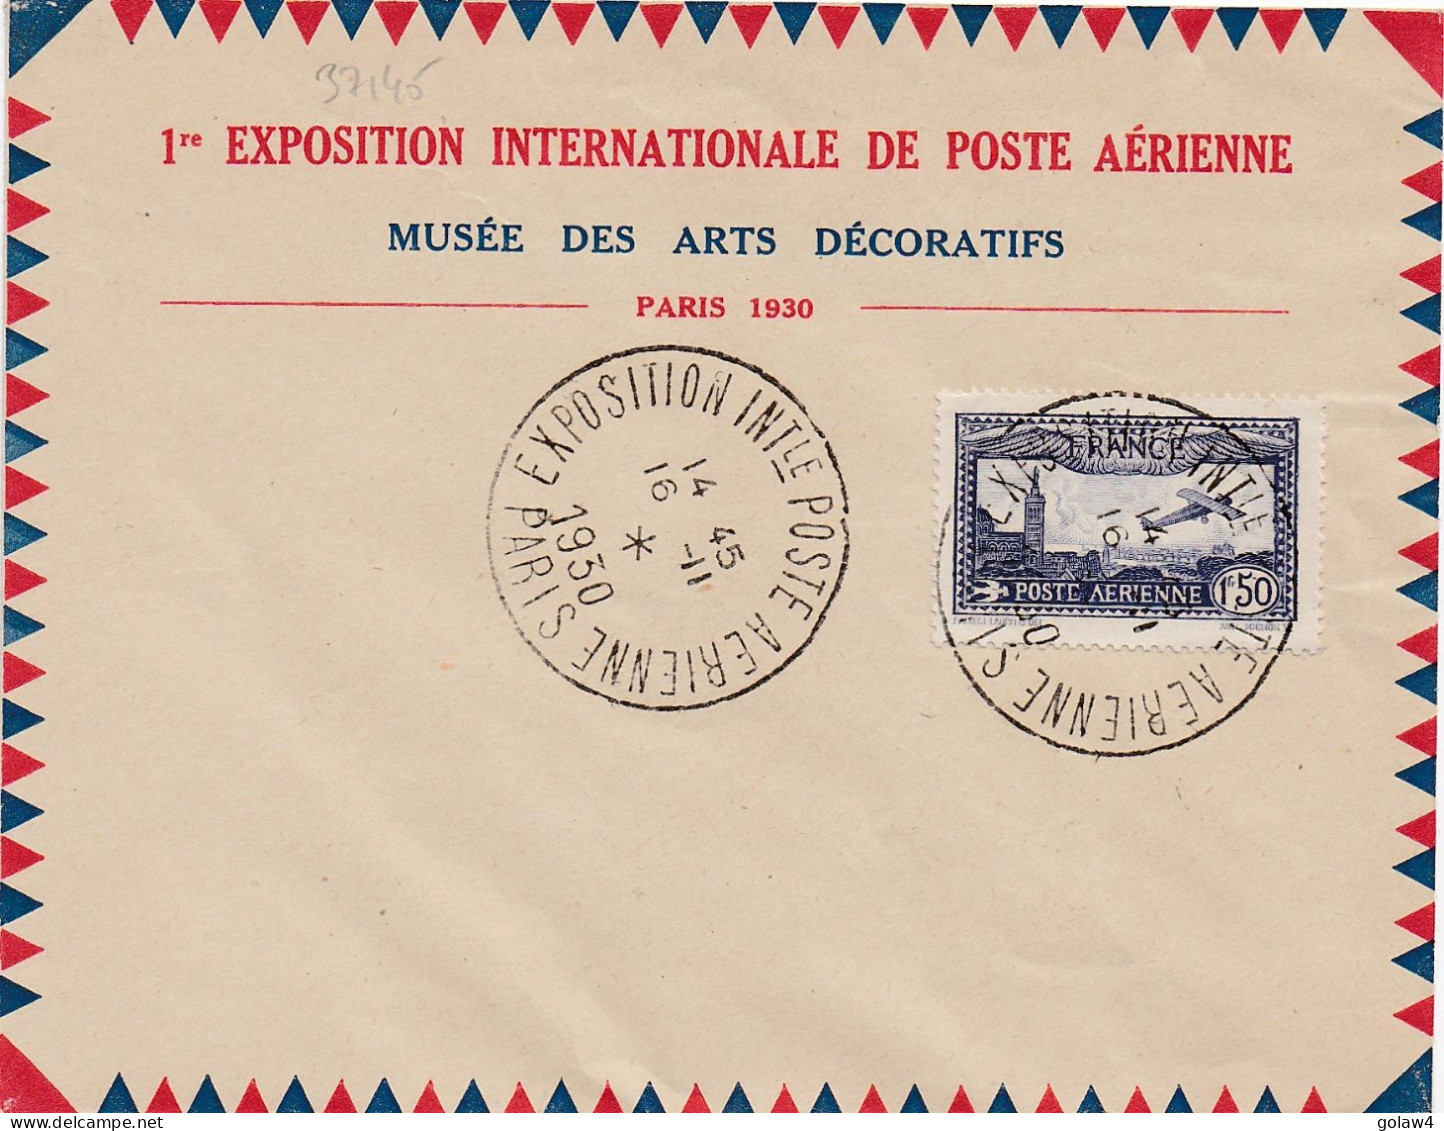 37145# ENVELOPPE MUSEE DES ARTS DECORATIFS Obl EXPOSITION INTERNATIONALE POSTE AERIENNE PARIS 16 Novembre 1930 - Commemorative Postmarks